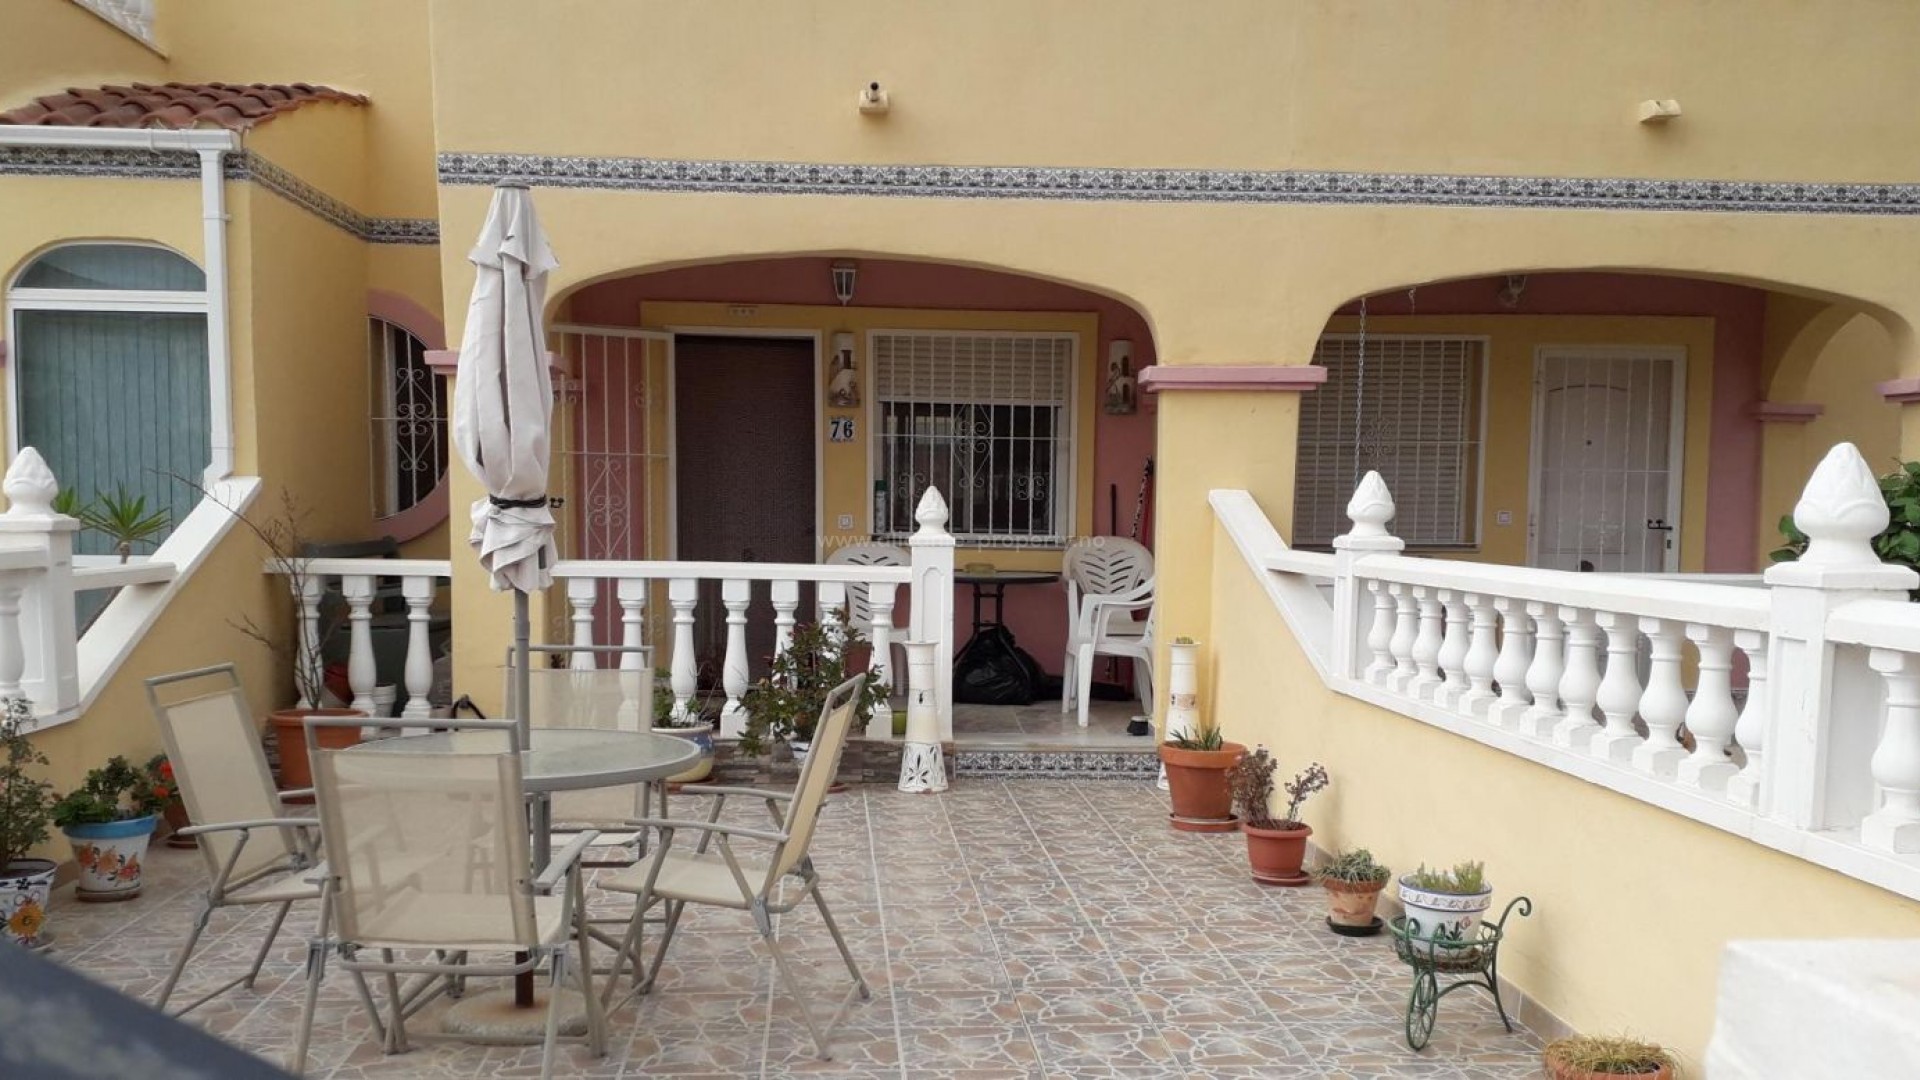 Equity release bolig/bungalow-leilighet i Pinar de Campoverde, Spania, 2 soverom, 2 bad, uteplass,  fellesskap har tilgang til 2 flotte svømmebassenger